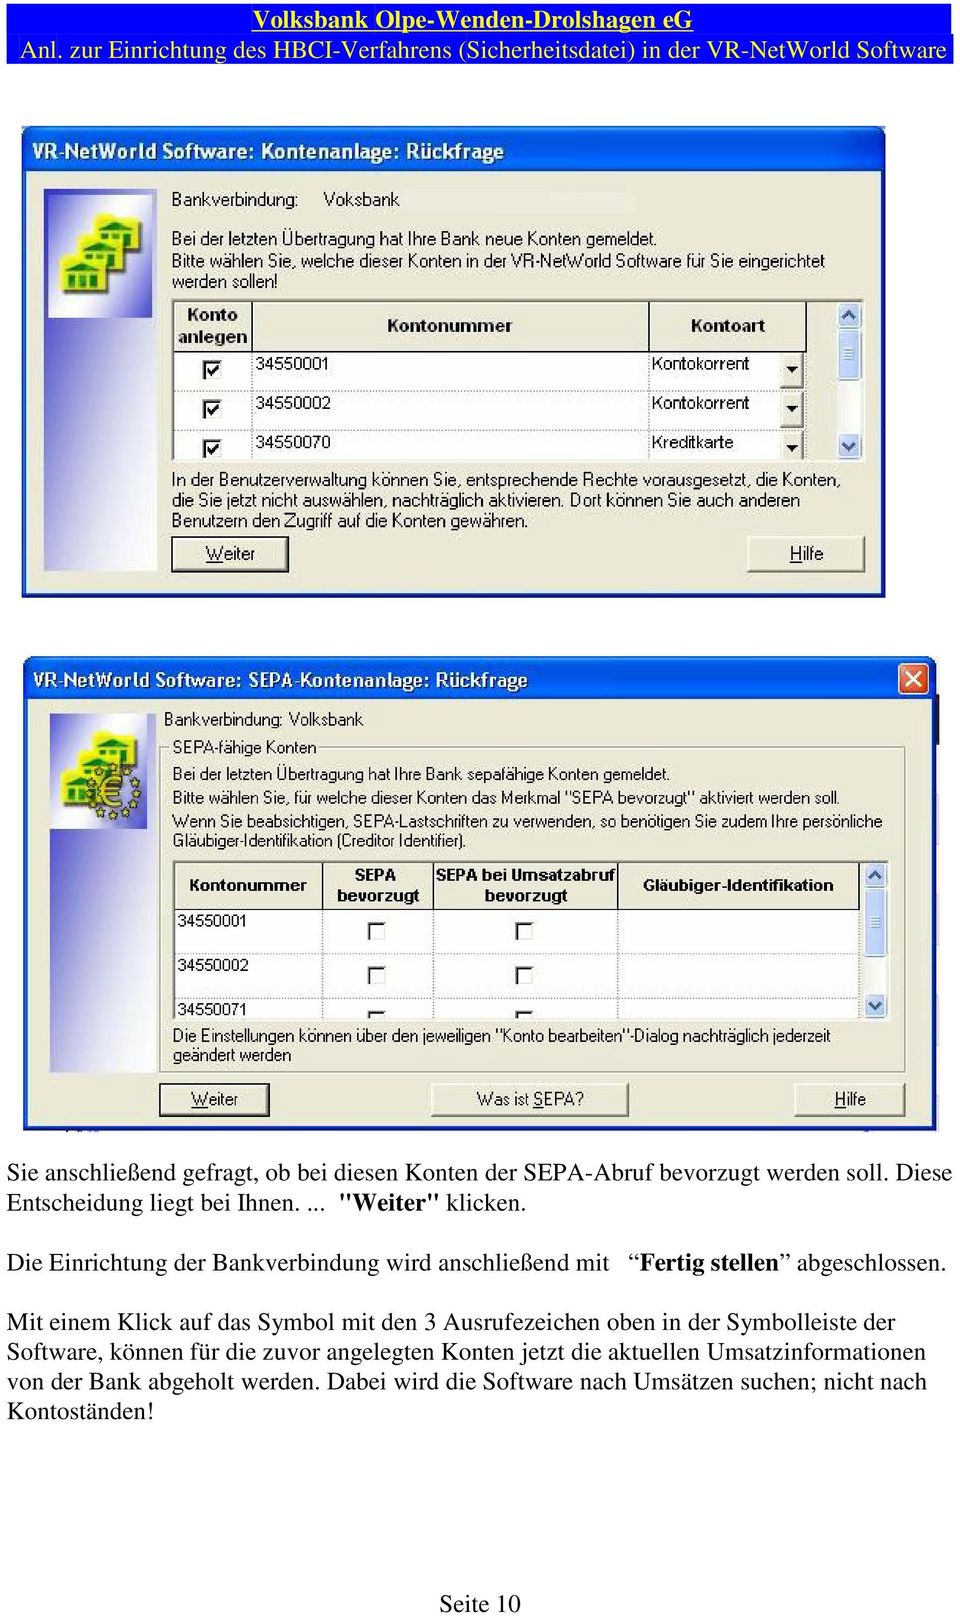 Mit einem Klick auf das Symbol mit den 3 Ausrufezeichen oben in der Symbolleiste der Software, können für die zuvor angelegten